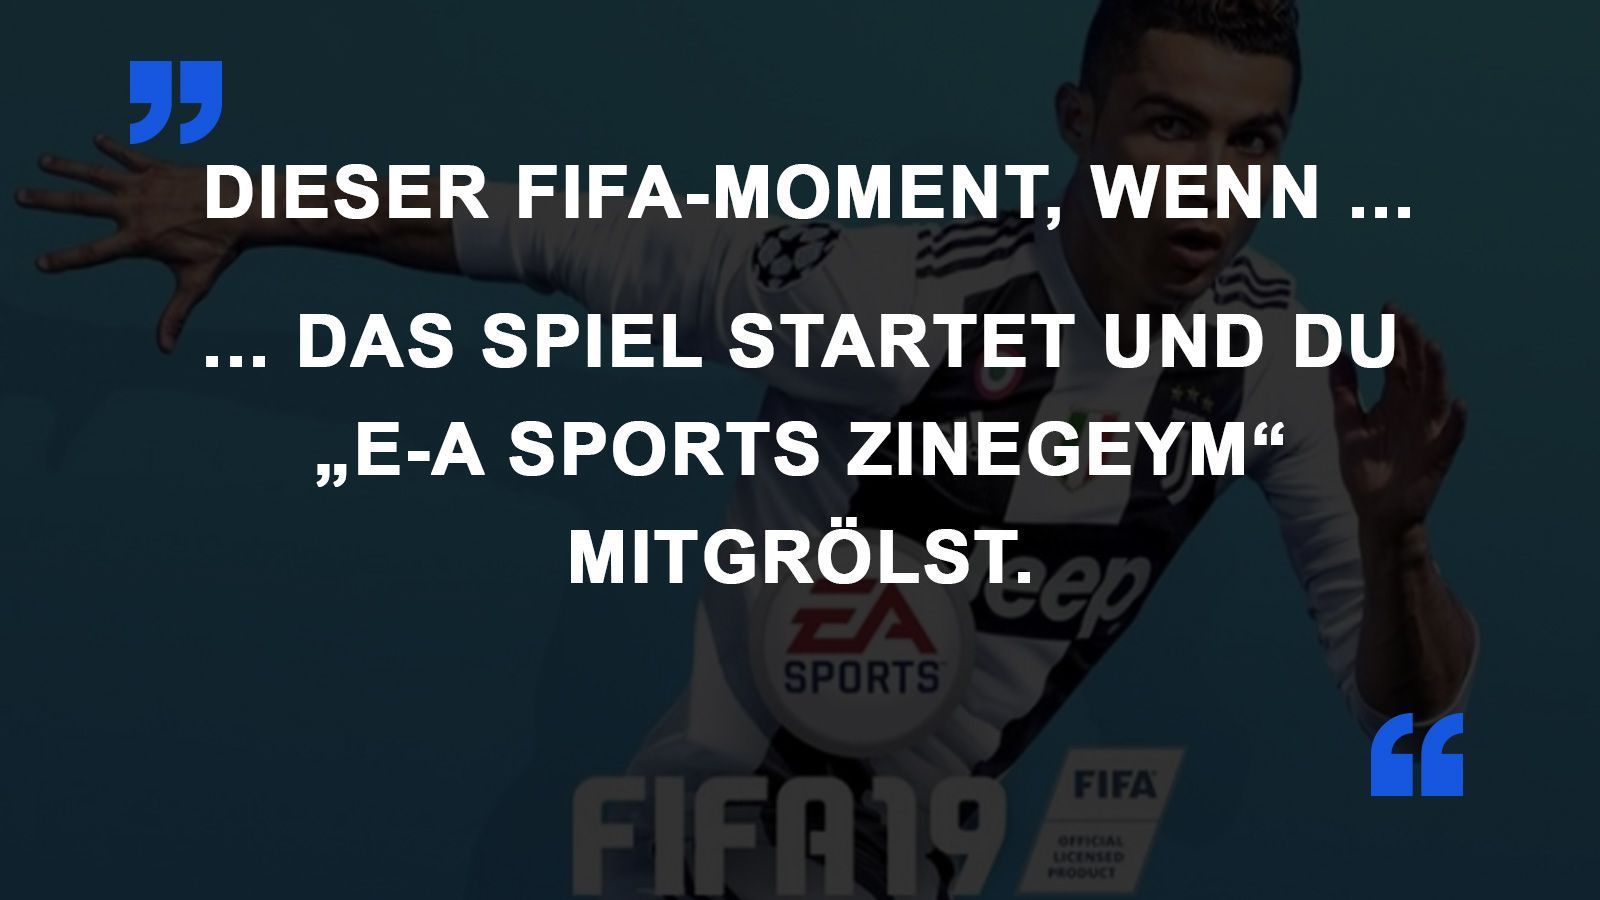 
                <strong>FIFA Momente EA Sports</strong><br>
                
              